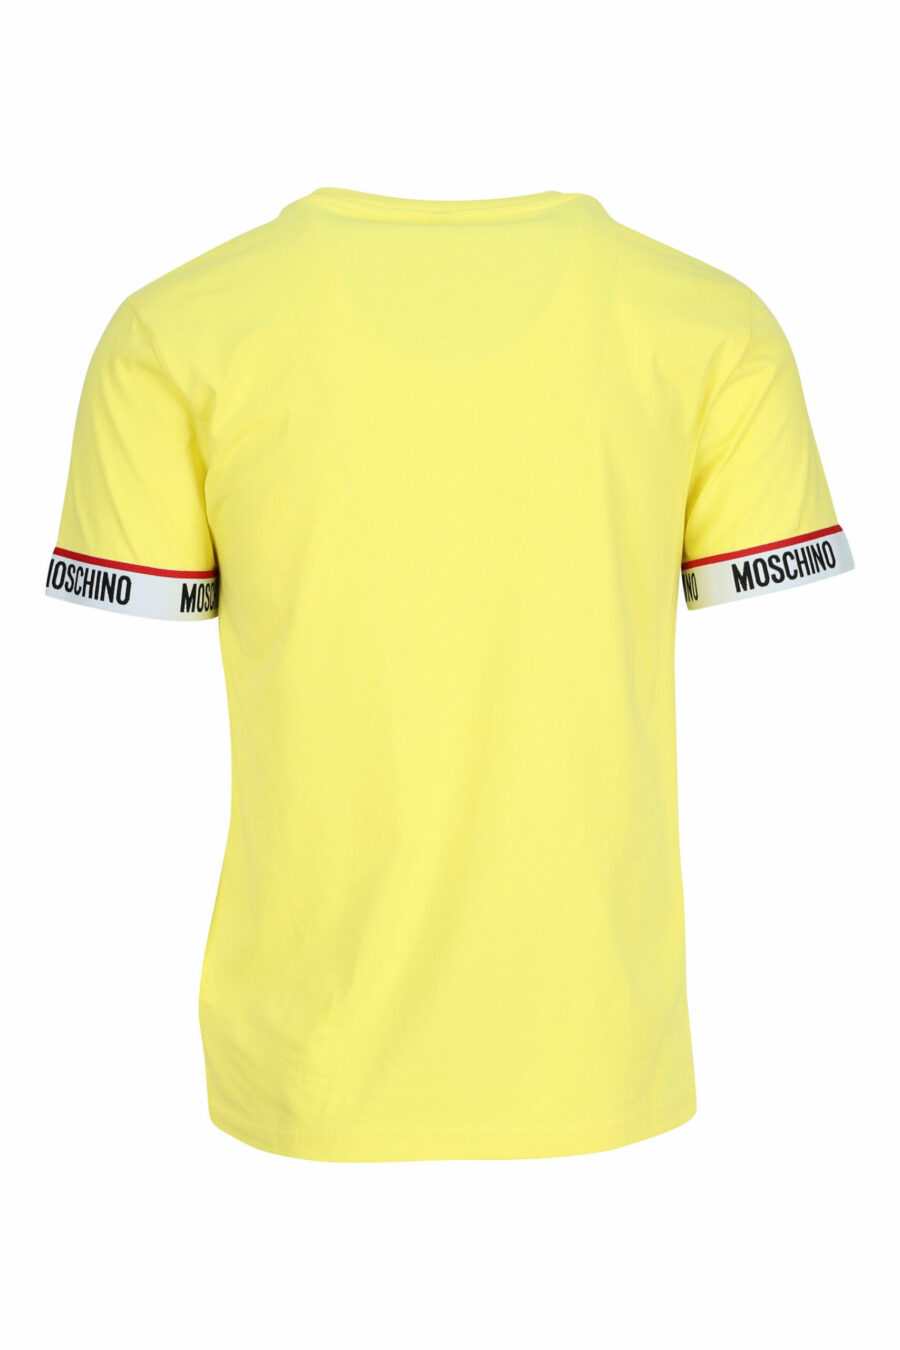 T-shirt jaune avec logo blanc sur les manches - 667113604671 1 scaled